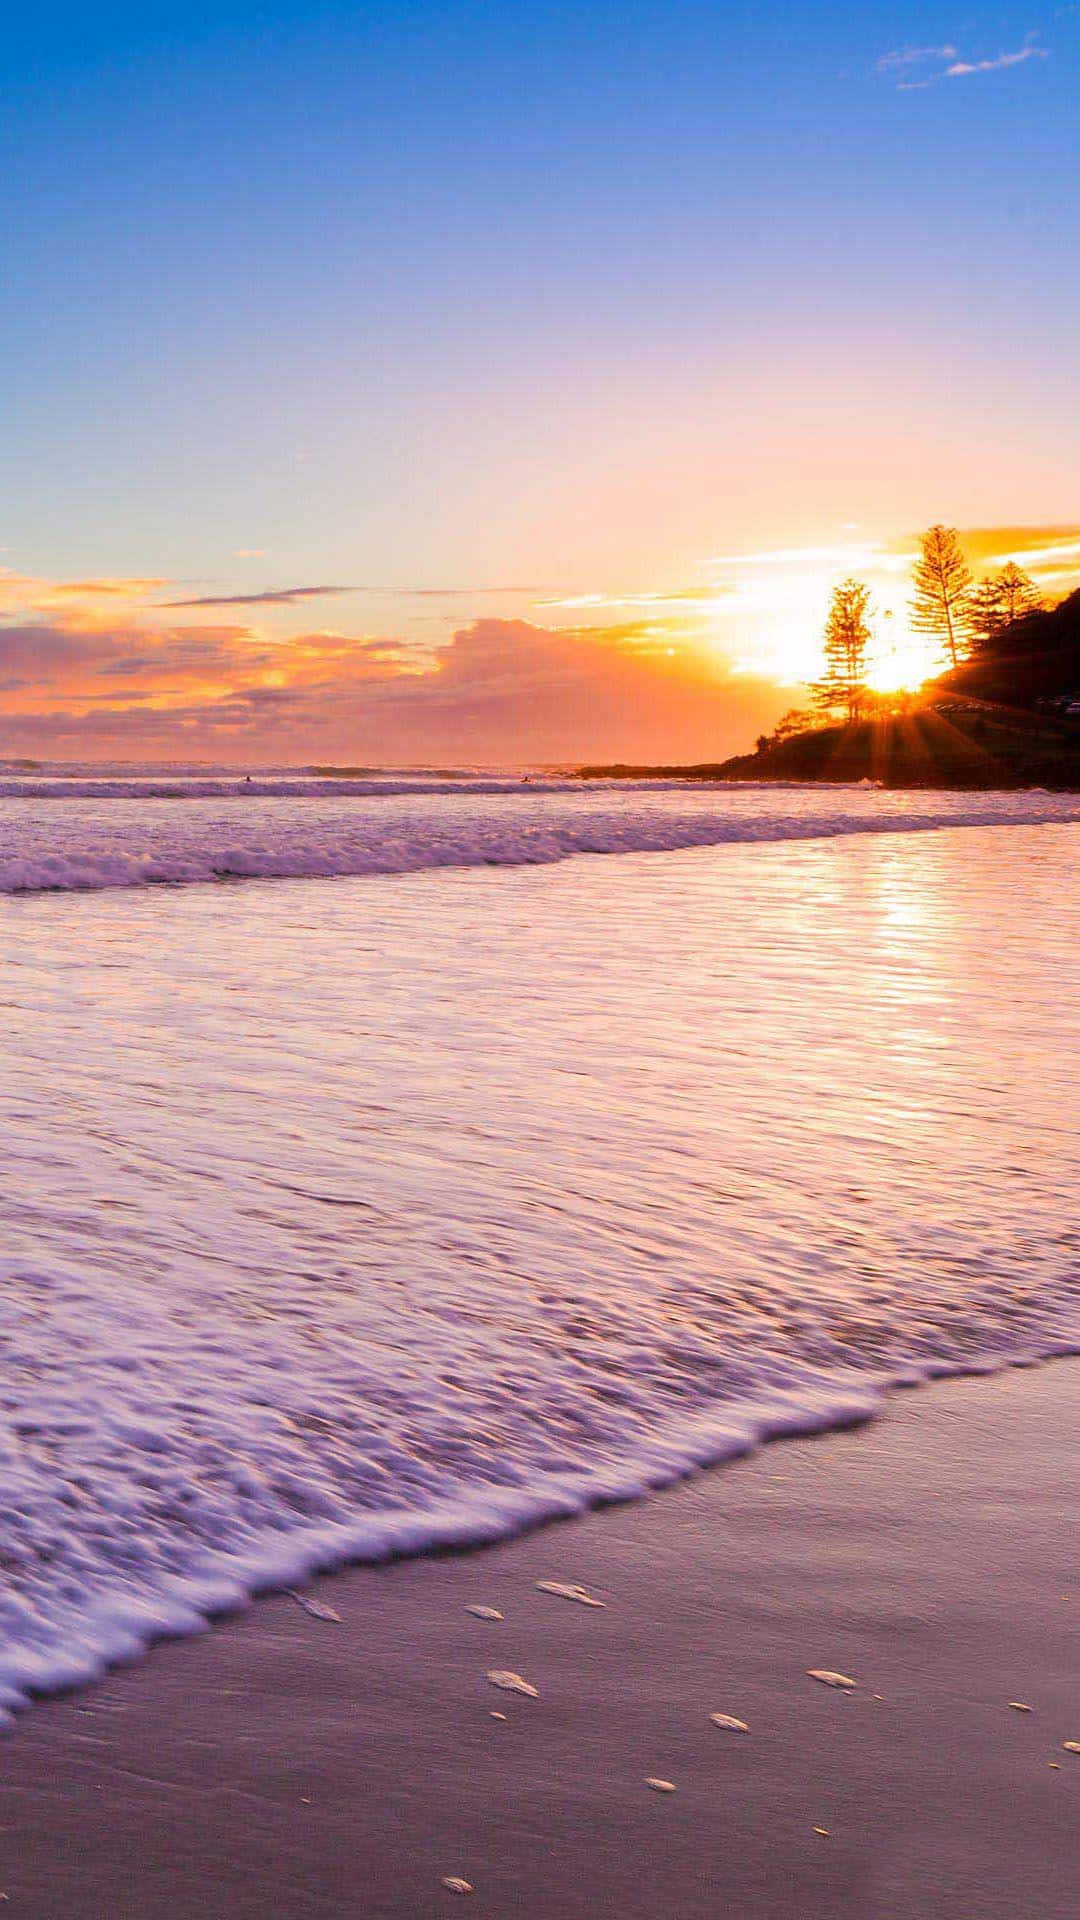 ocean sunset iphone wallpaper